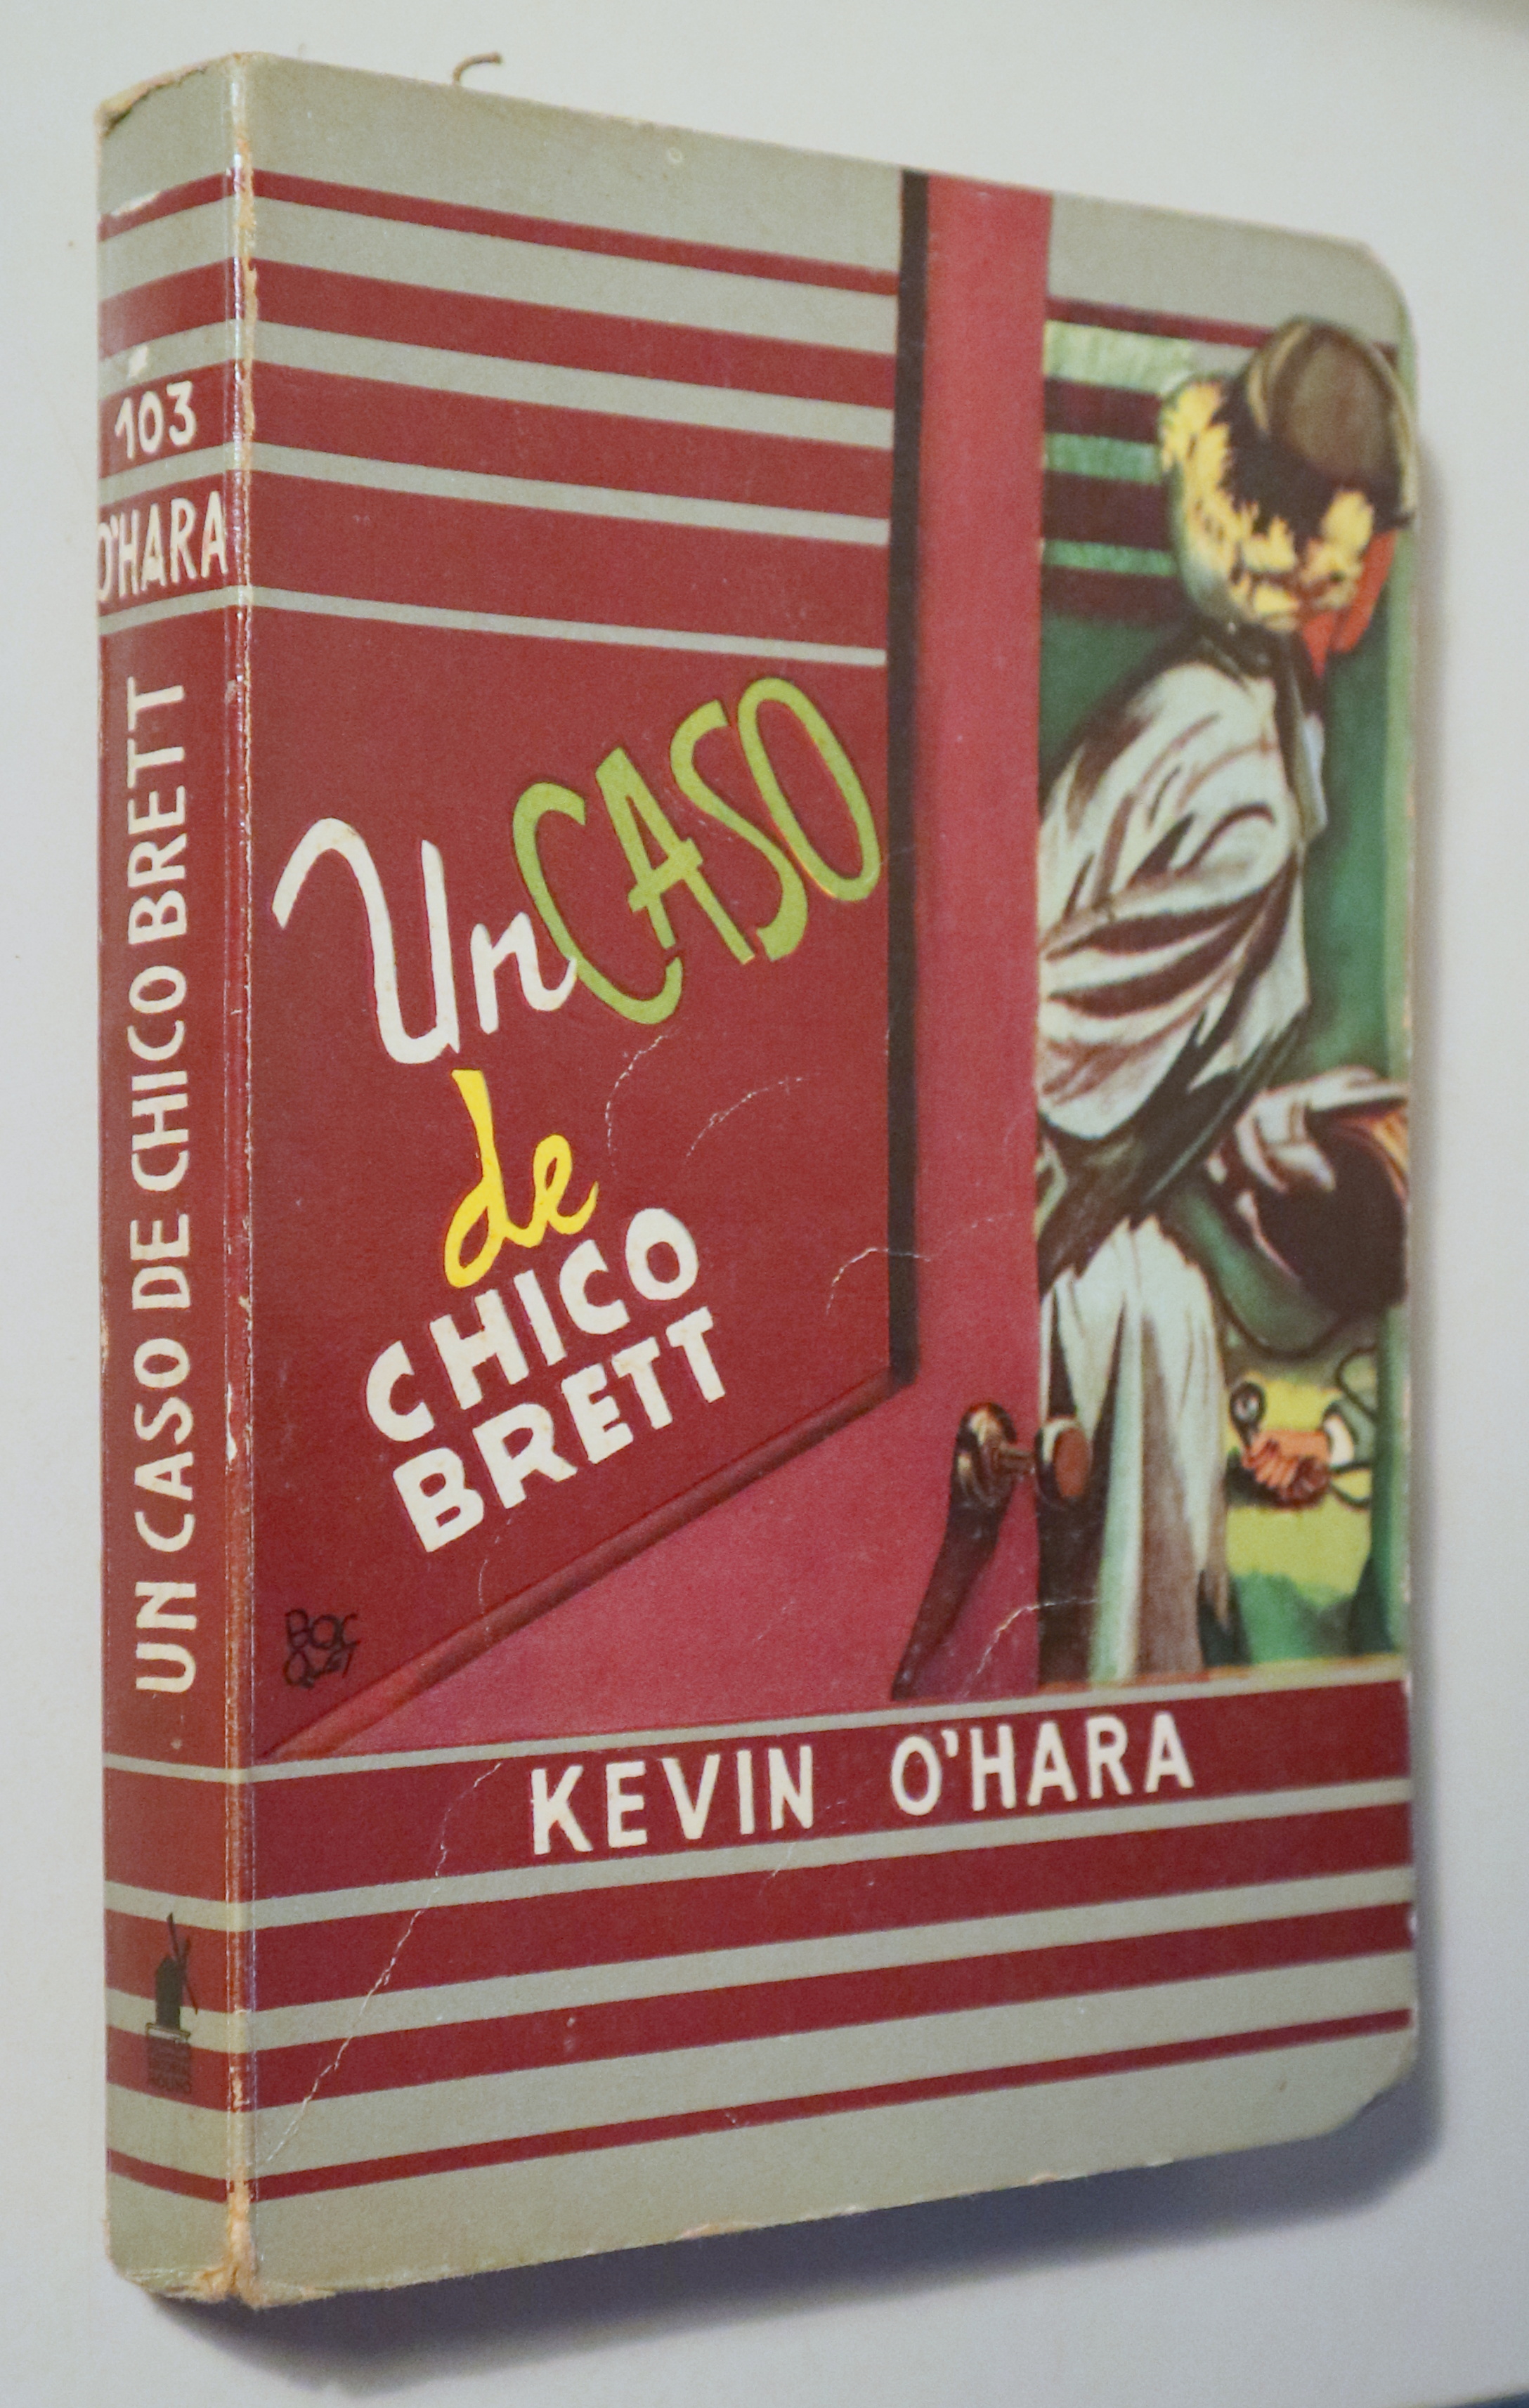 UN CASO DE CHICO BRETT - Barcelona 1958